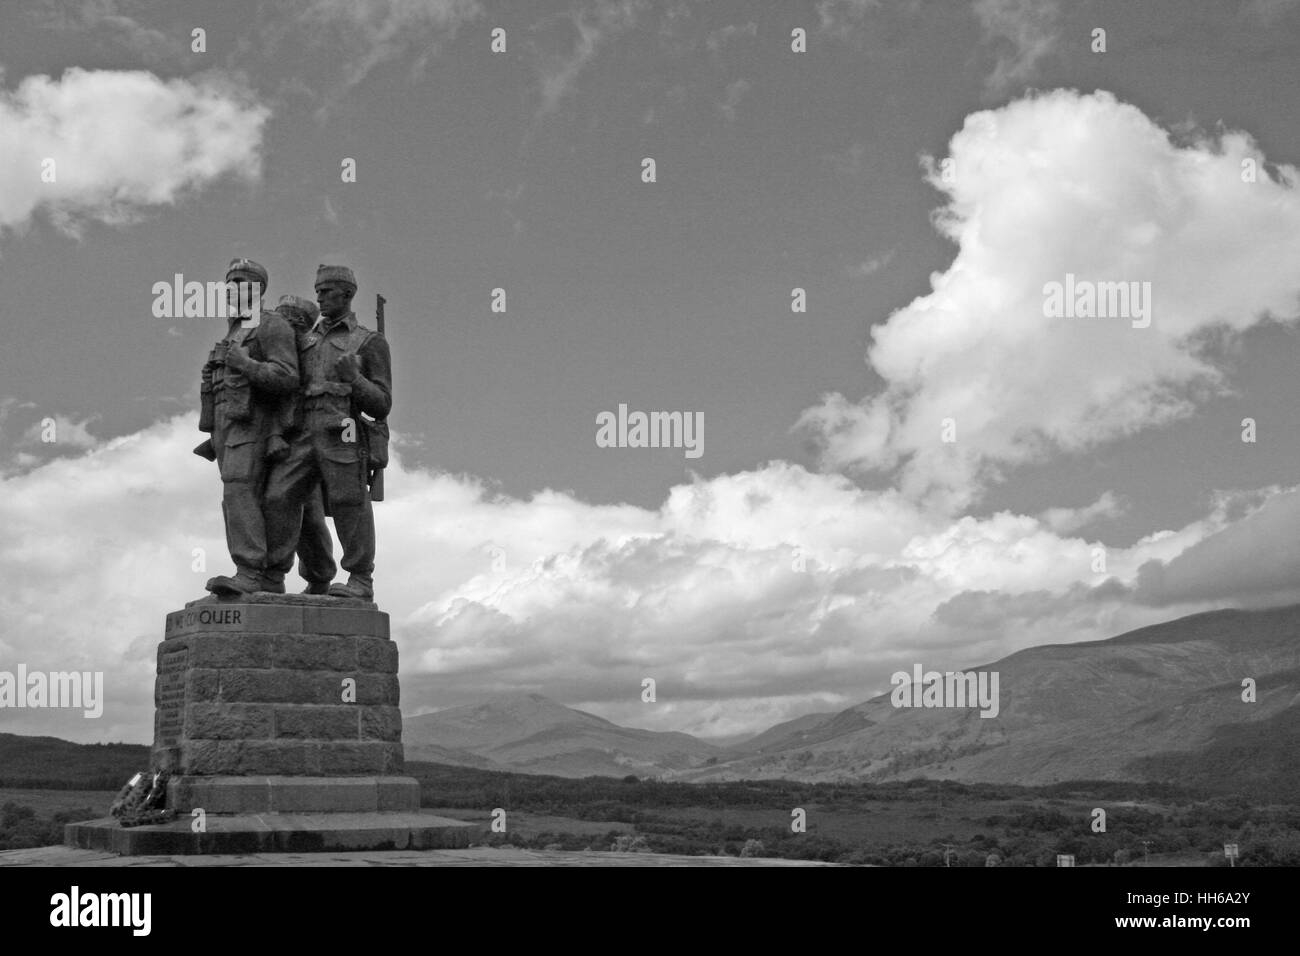 Commando Memorial at Spean Bridge Stock Photo